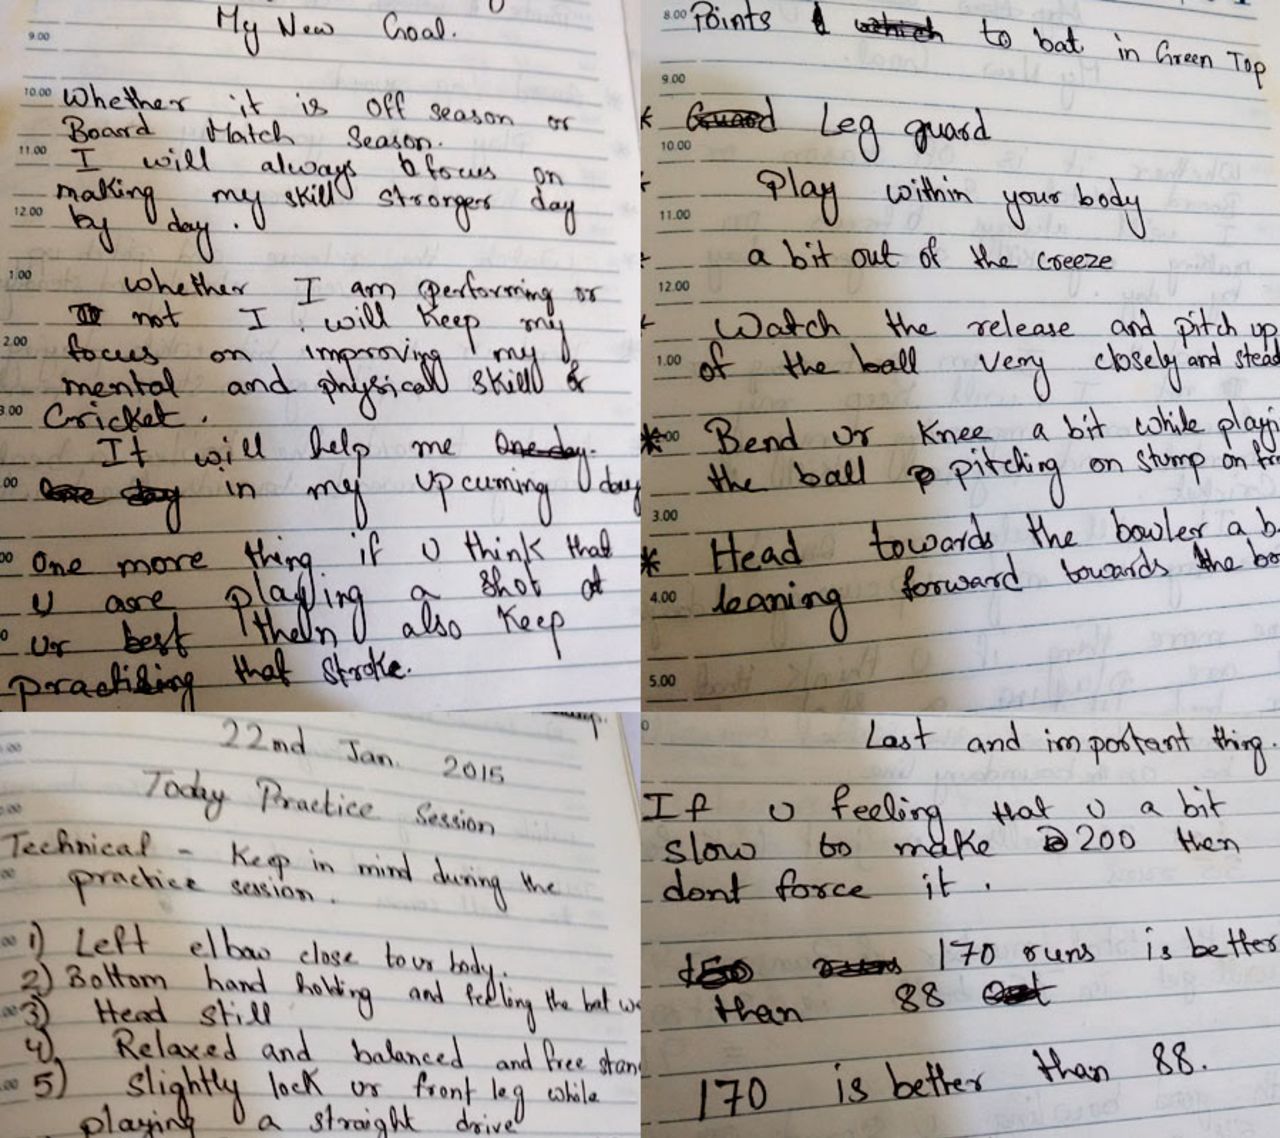 Notes from Ankit Keshri's diary